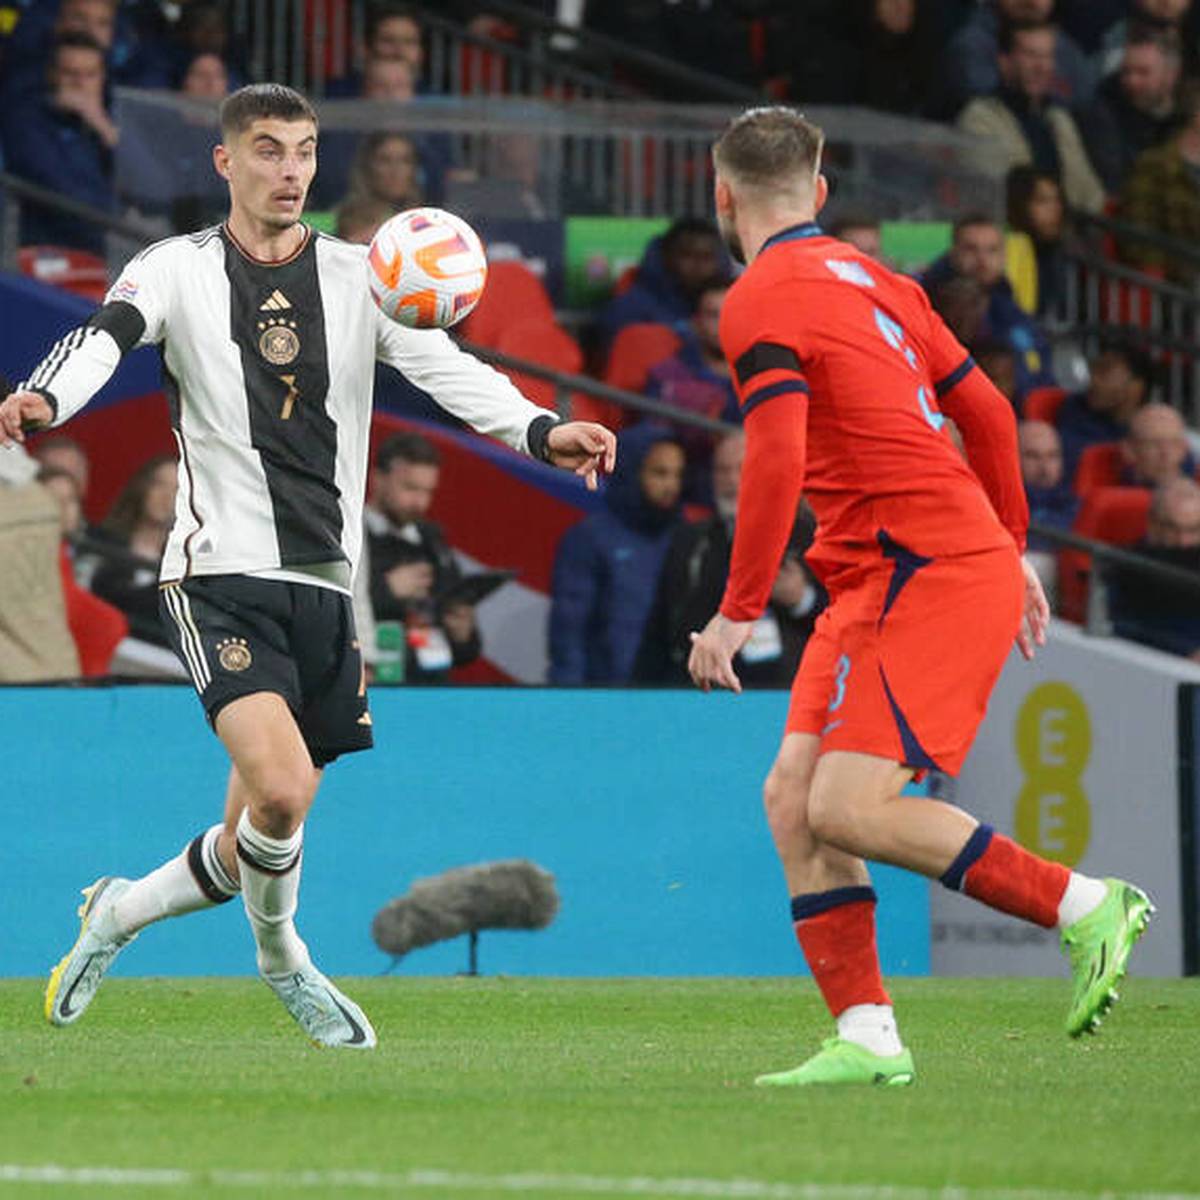 Die deutsche Fußball-Nationalmannschaft gibt eine 2:0-Führung gegen England aus der Hand und spielt dank Kai Havertz dennoch remis. Für Joshua Kimmich ist der Einbruch nach der Zwei-Tore-Führung „unerklärlich“.